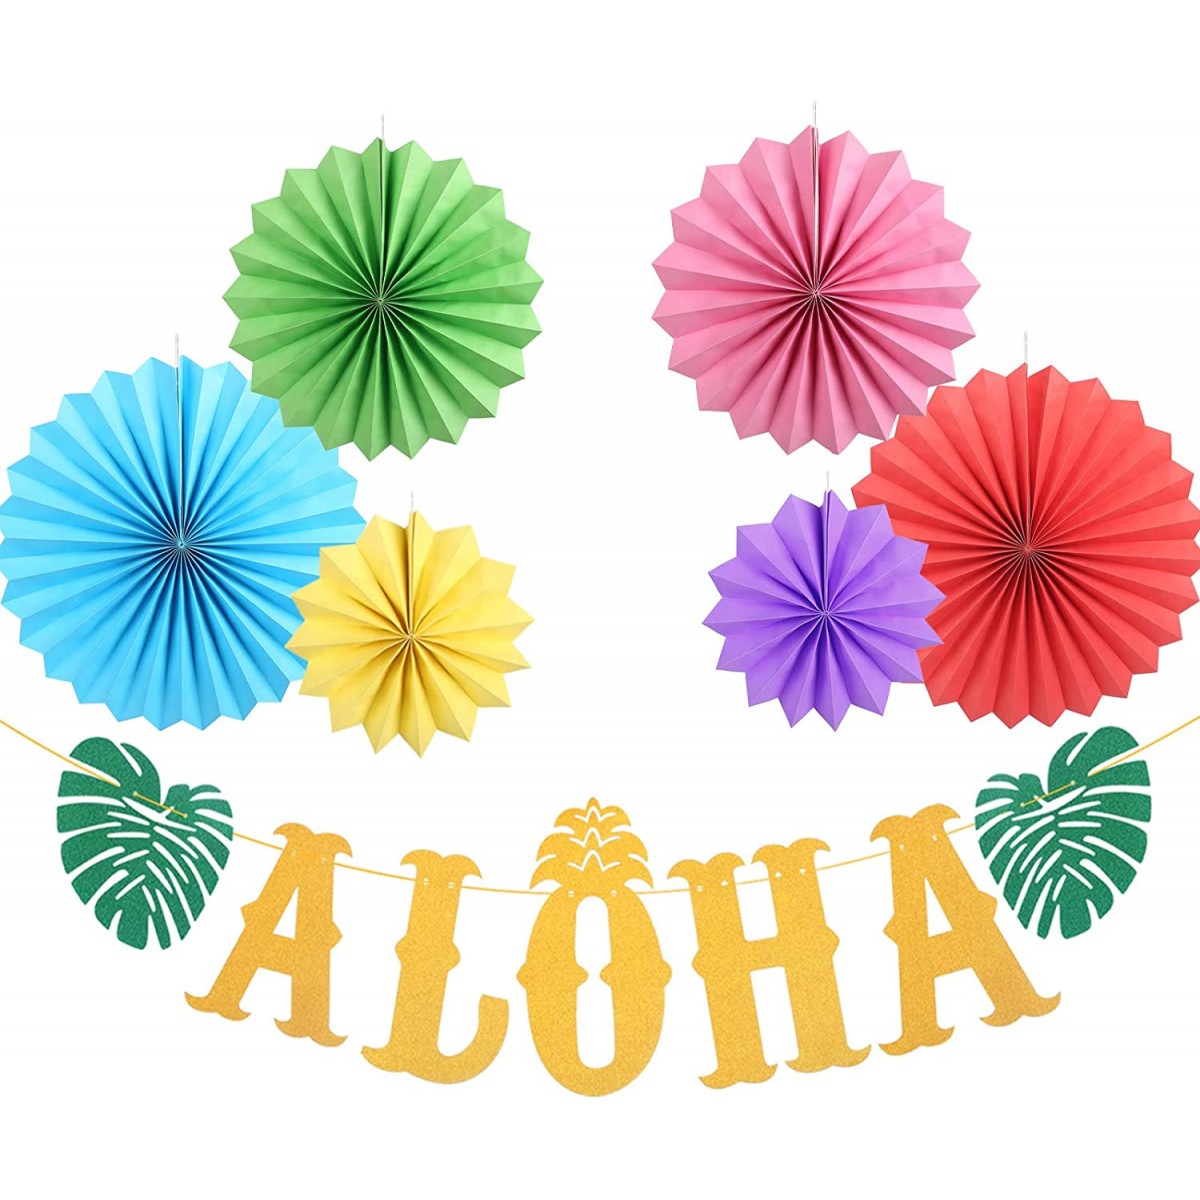 Festone Aloha e ventagli a nido d'ape, decorazioni festa Hawaiana